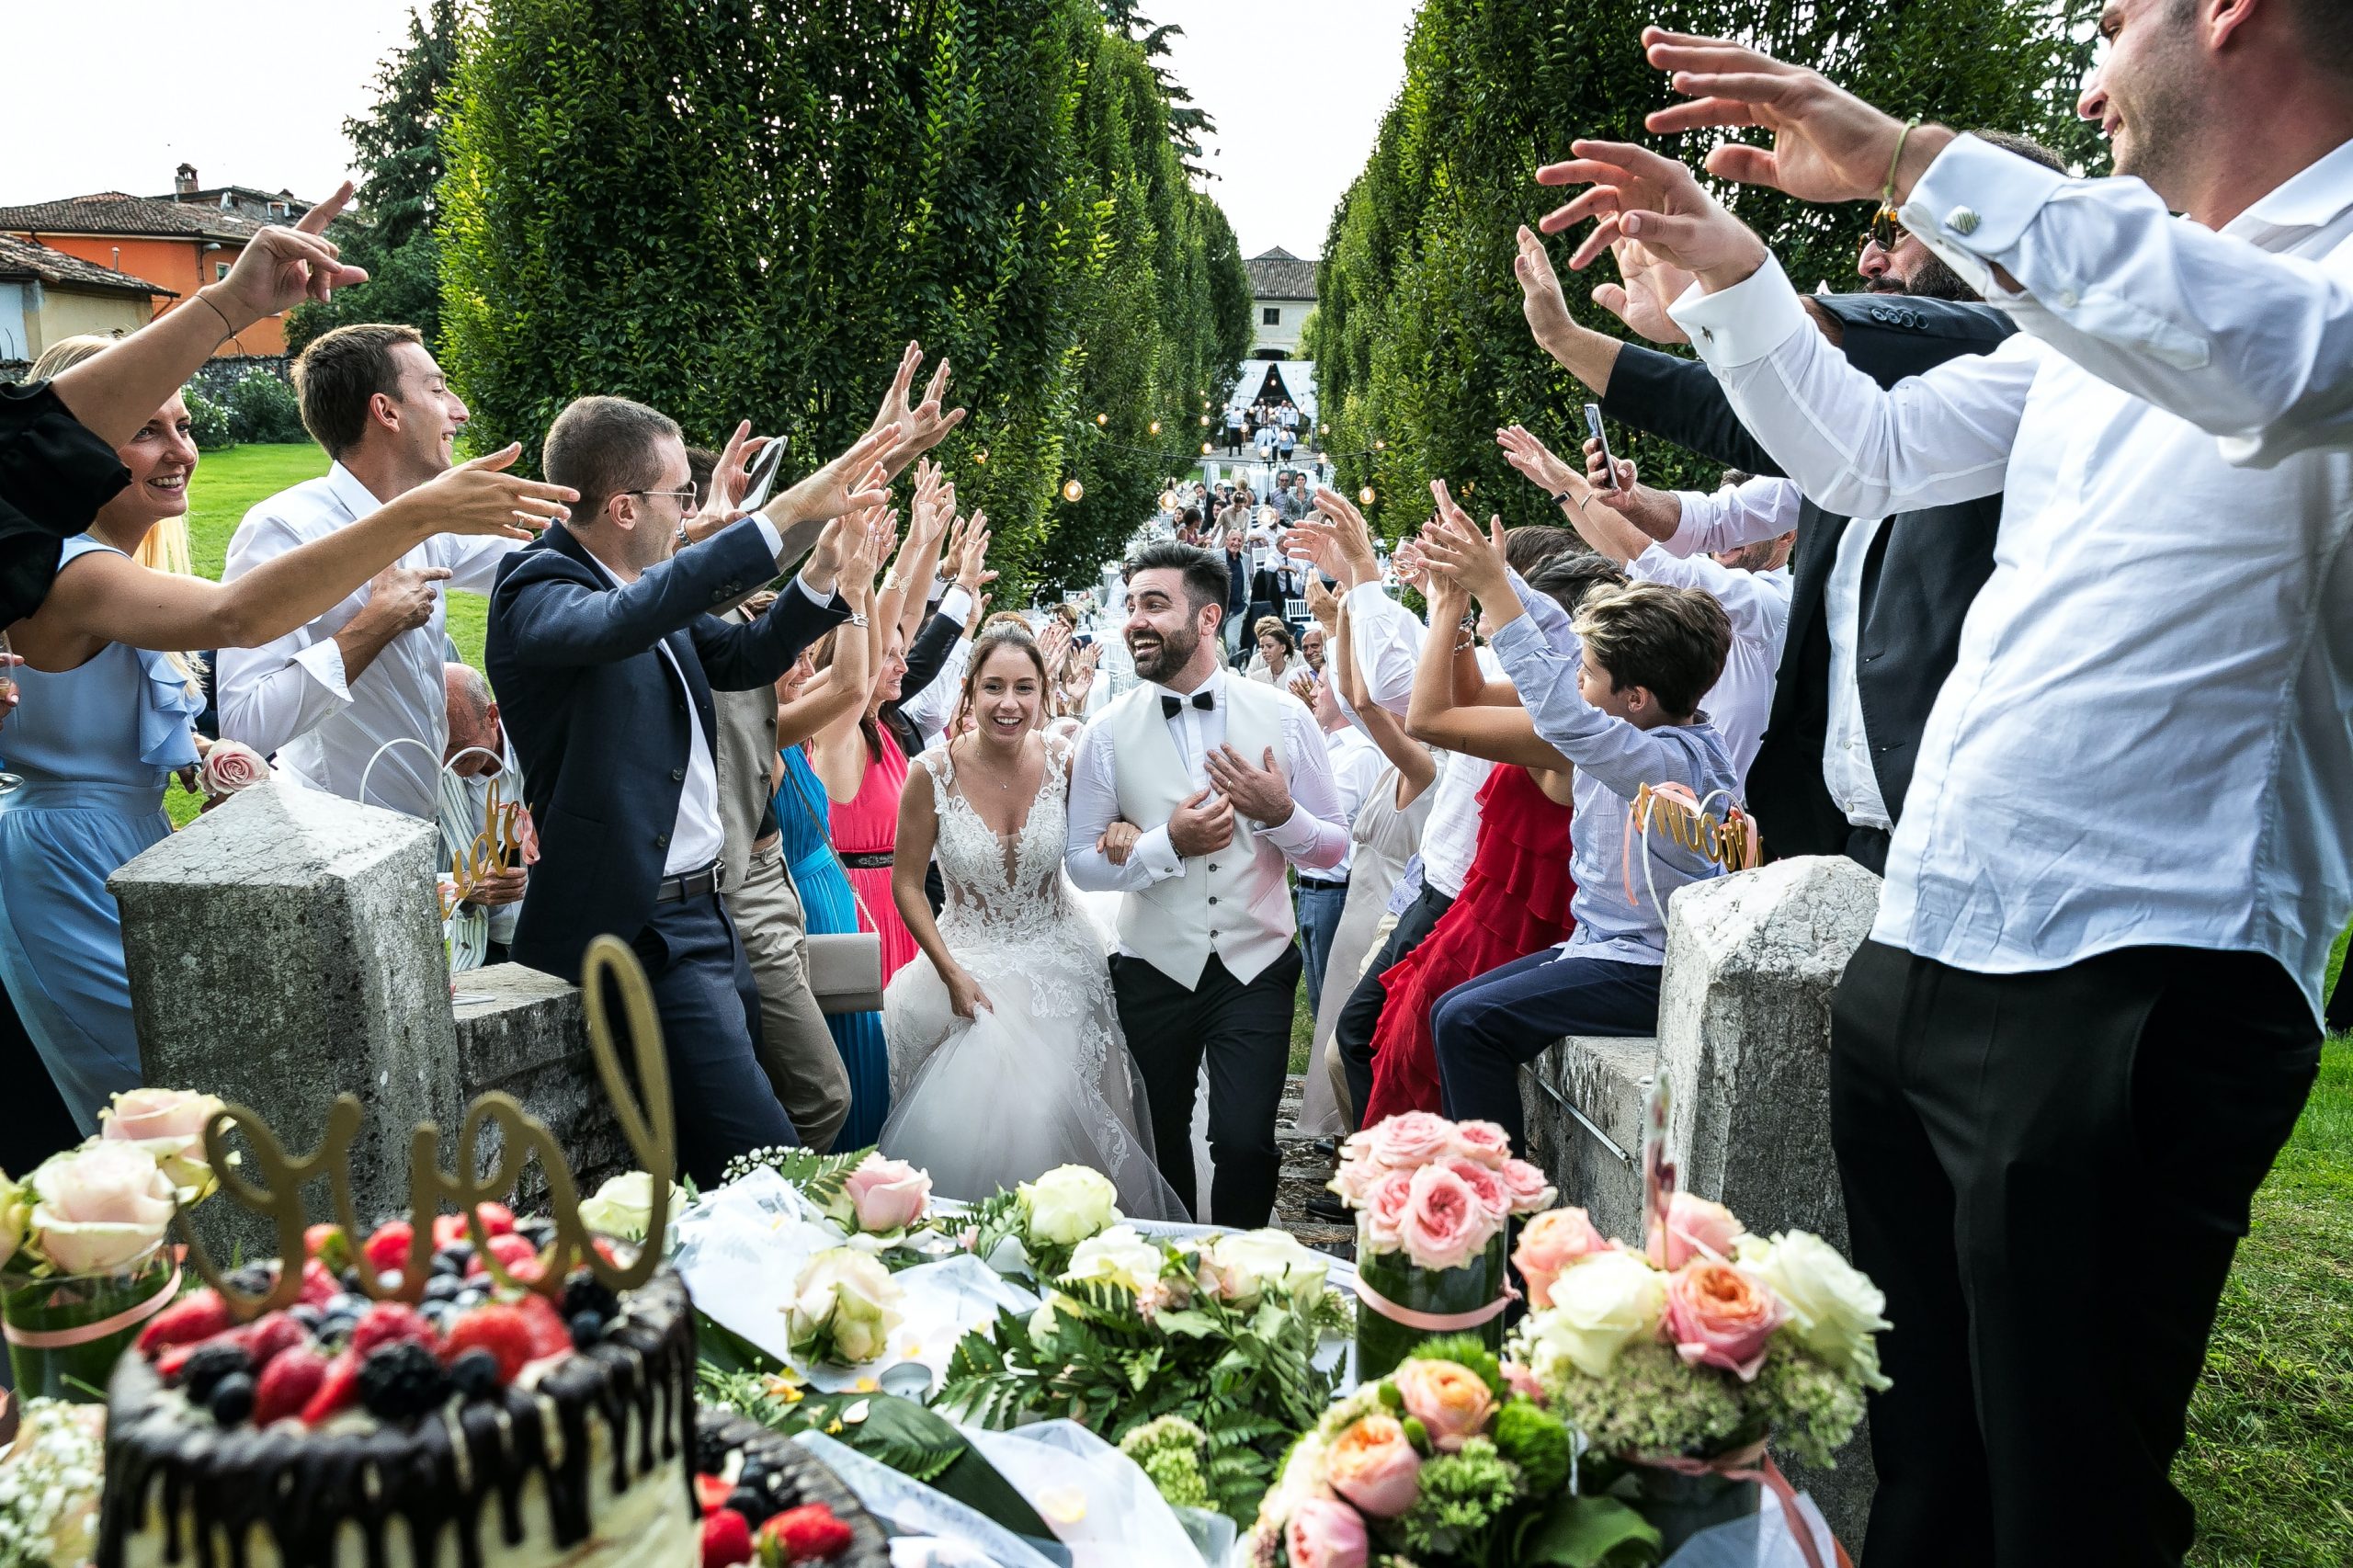 A large wedding celebration outdoors